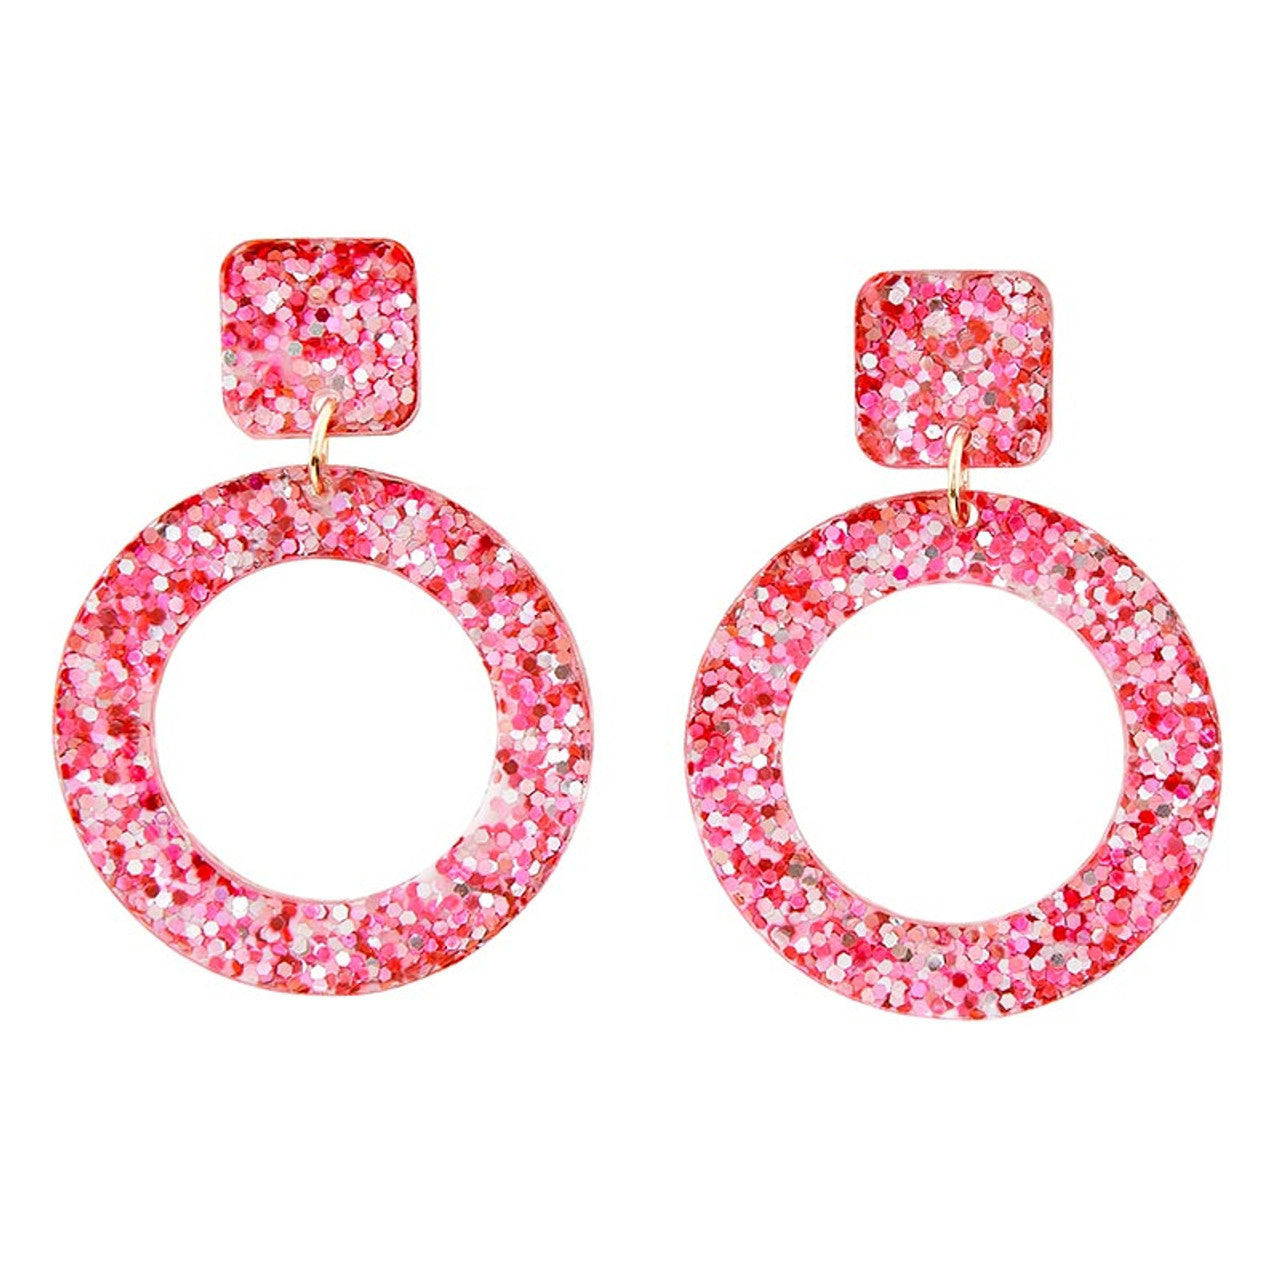 Yay Acrylic Party Earrings | Glitter Novelty Drop Earrings | 2.5" x 4.5"